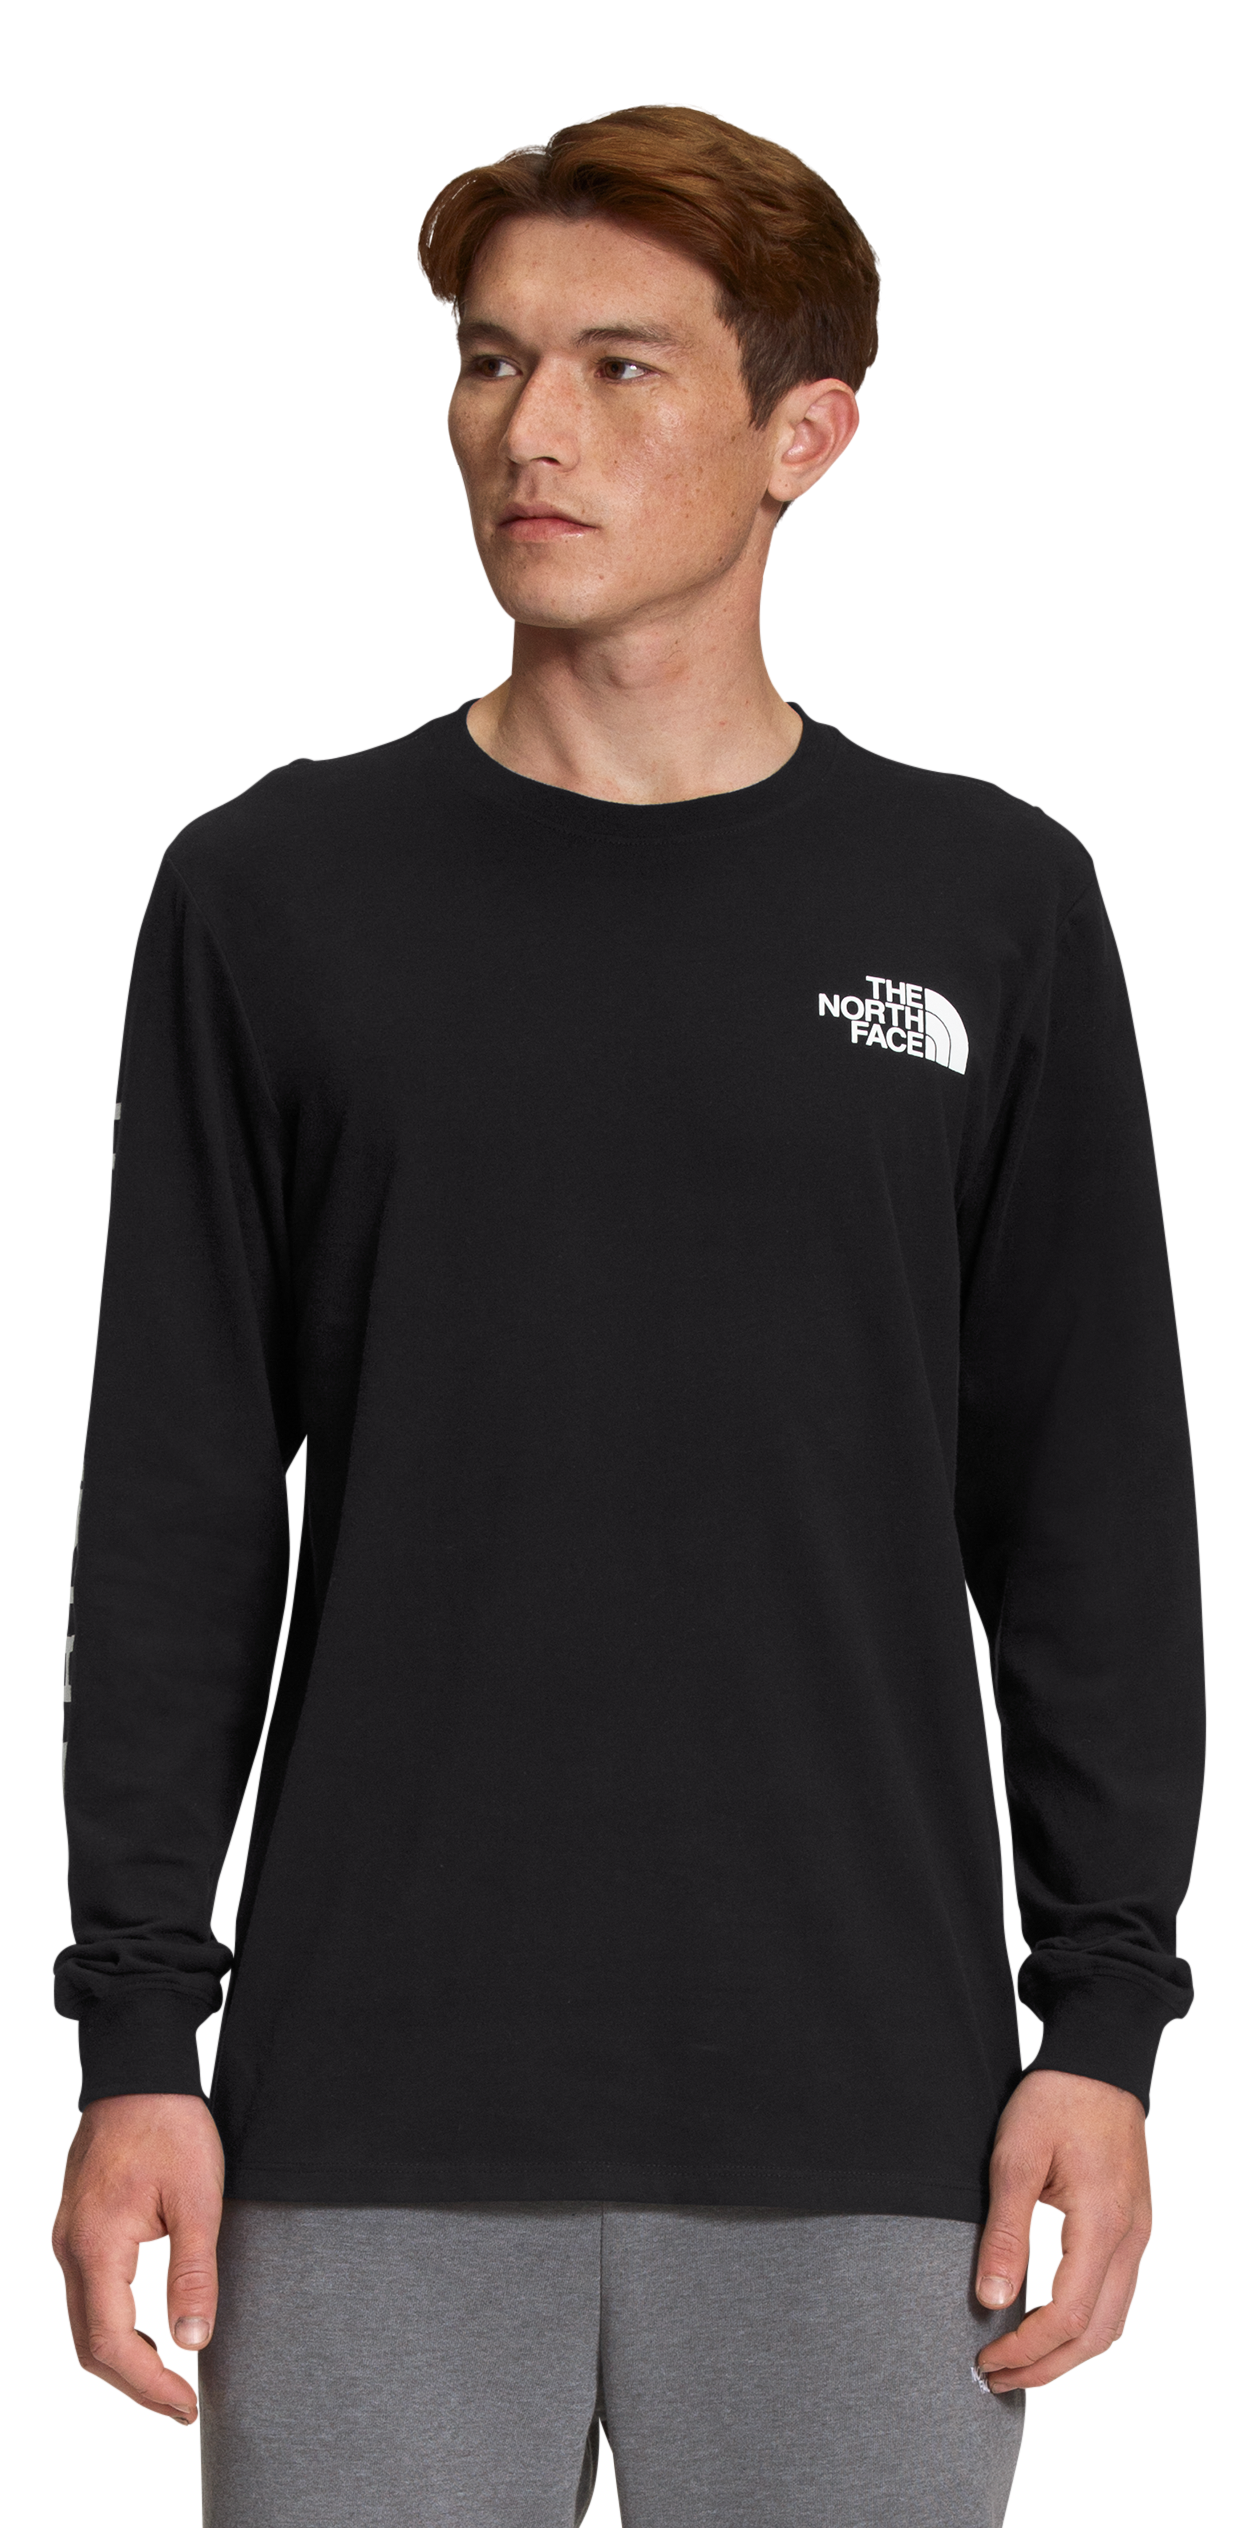 The North Face TNF Sleeve Hit Long-Sleeve T-Shirt for Men - TNF Black/TNF White - XL